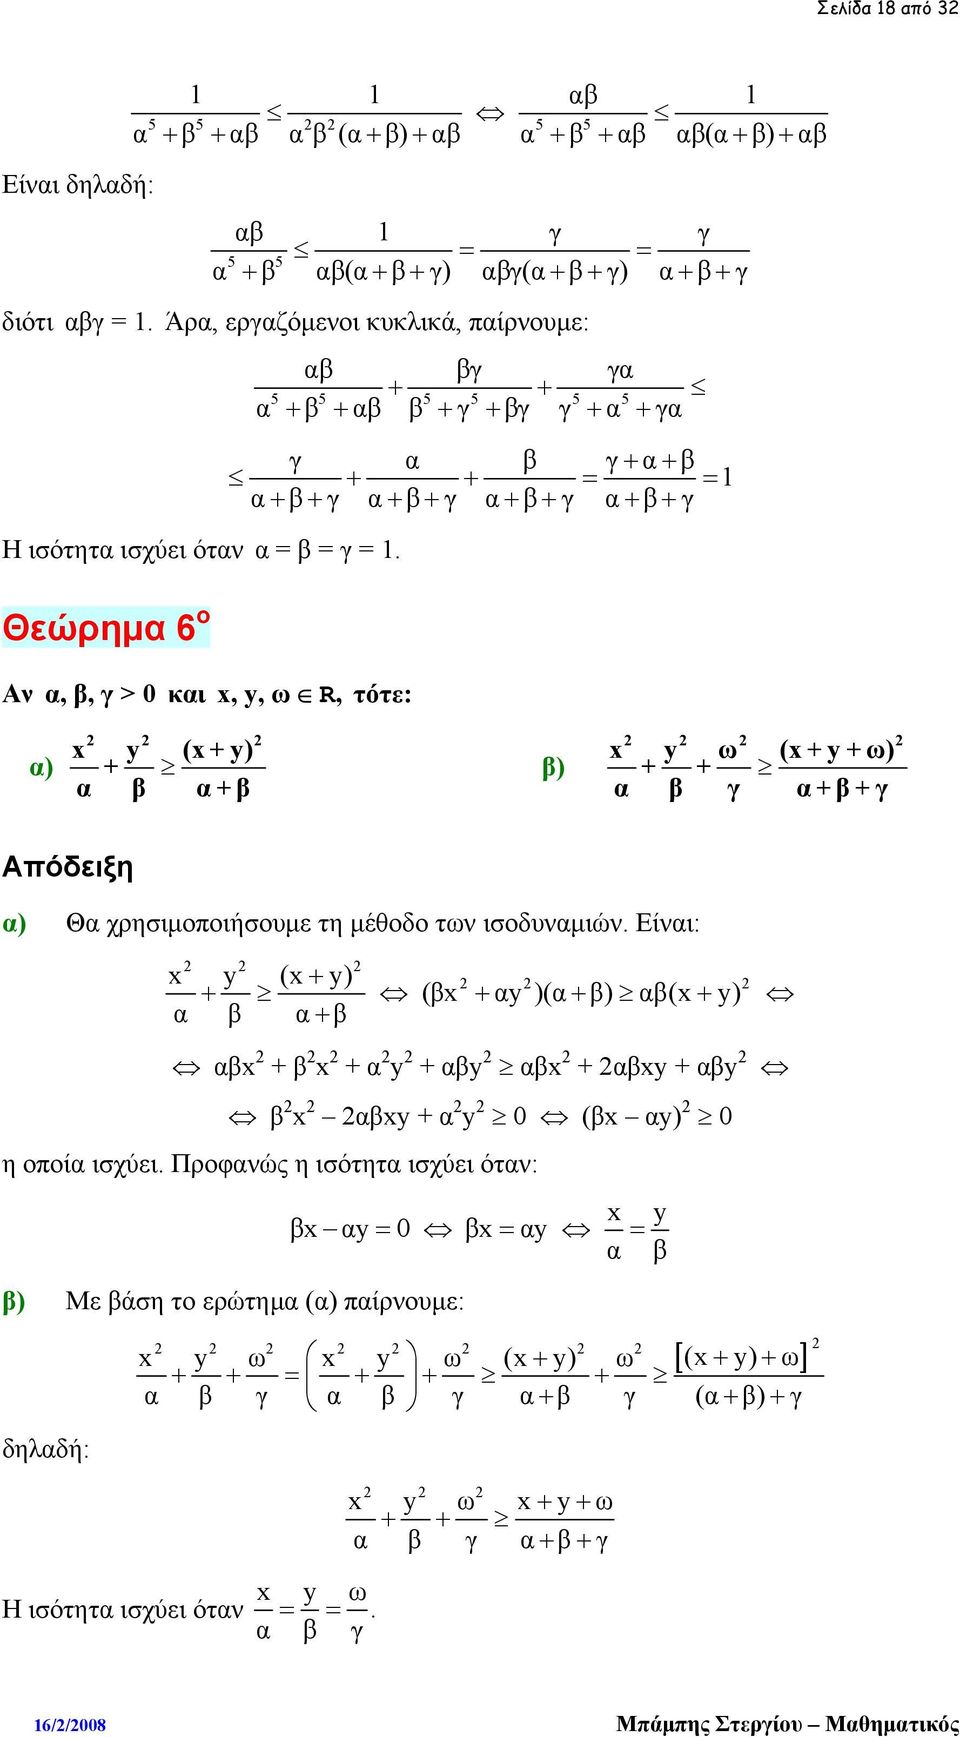 Θεώρημα 6 ο Αν α, β, γ > 0 και x, y, ω R, τότε: x y (x+y) α) + α β α+ β x y ω (x + y + ω) β) + + α β γ α+ β + γ Απόδειξη α) Θα χρησιμοποιήσουμε τη μέθοδο των ισοδυναμιών.